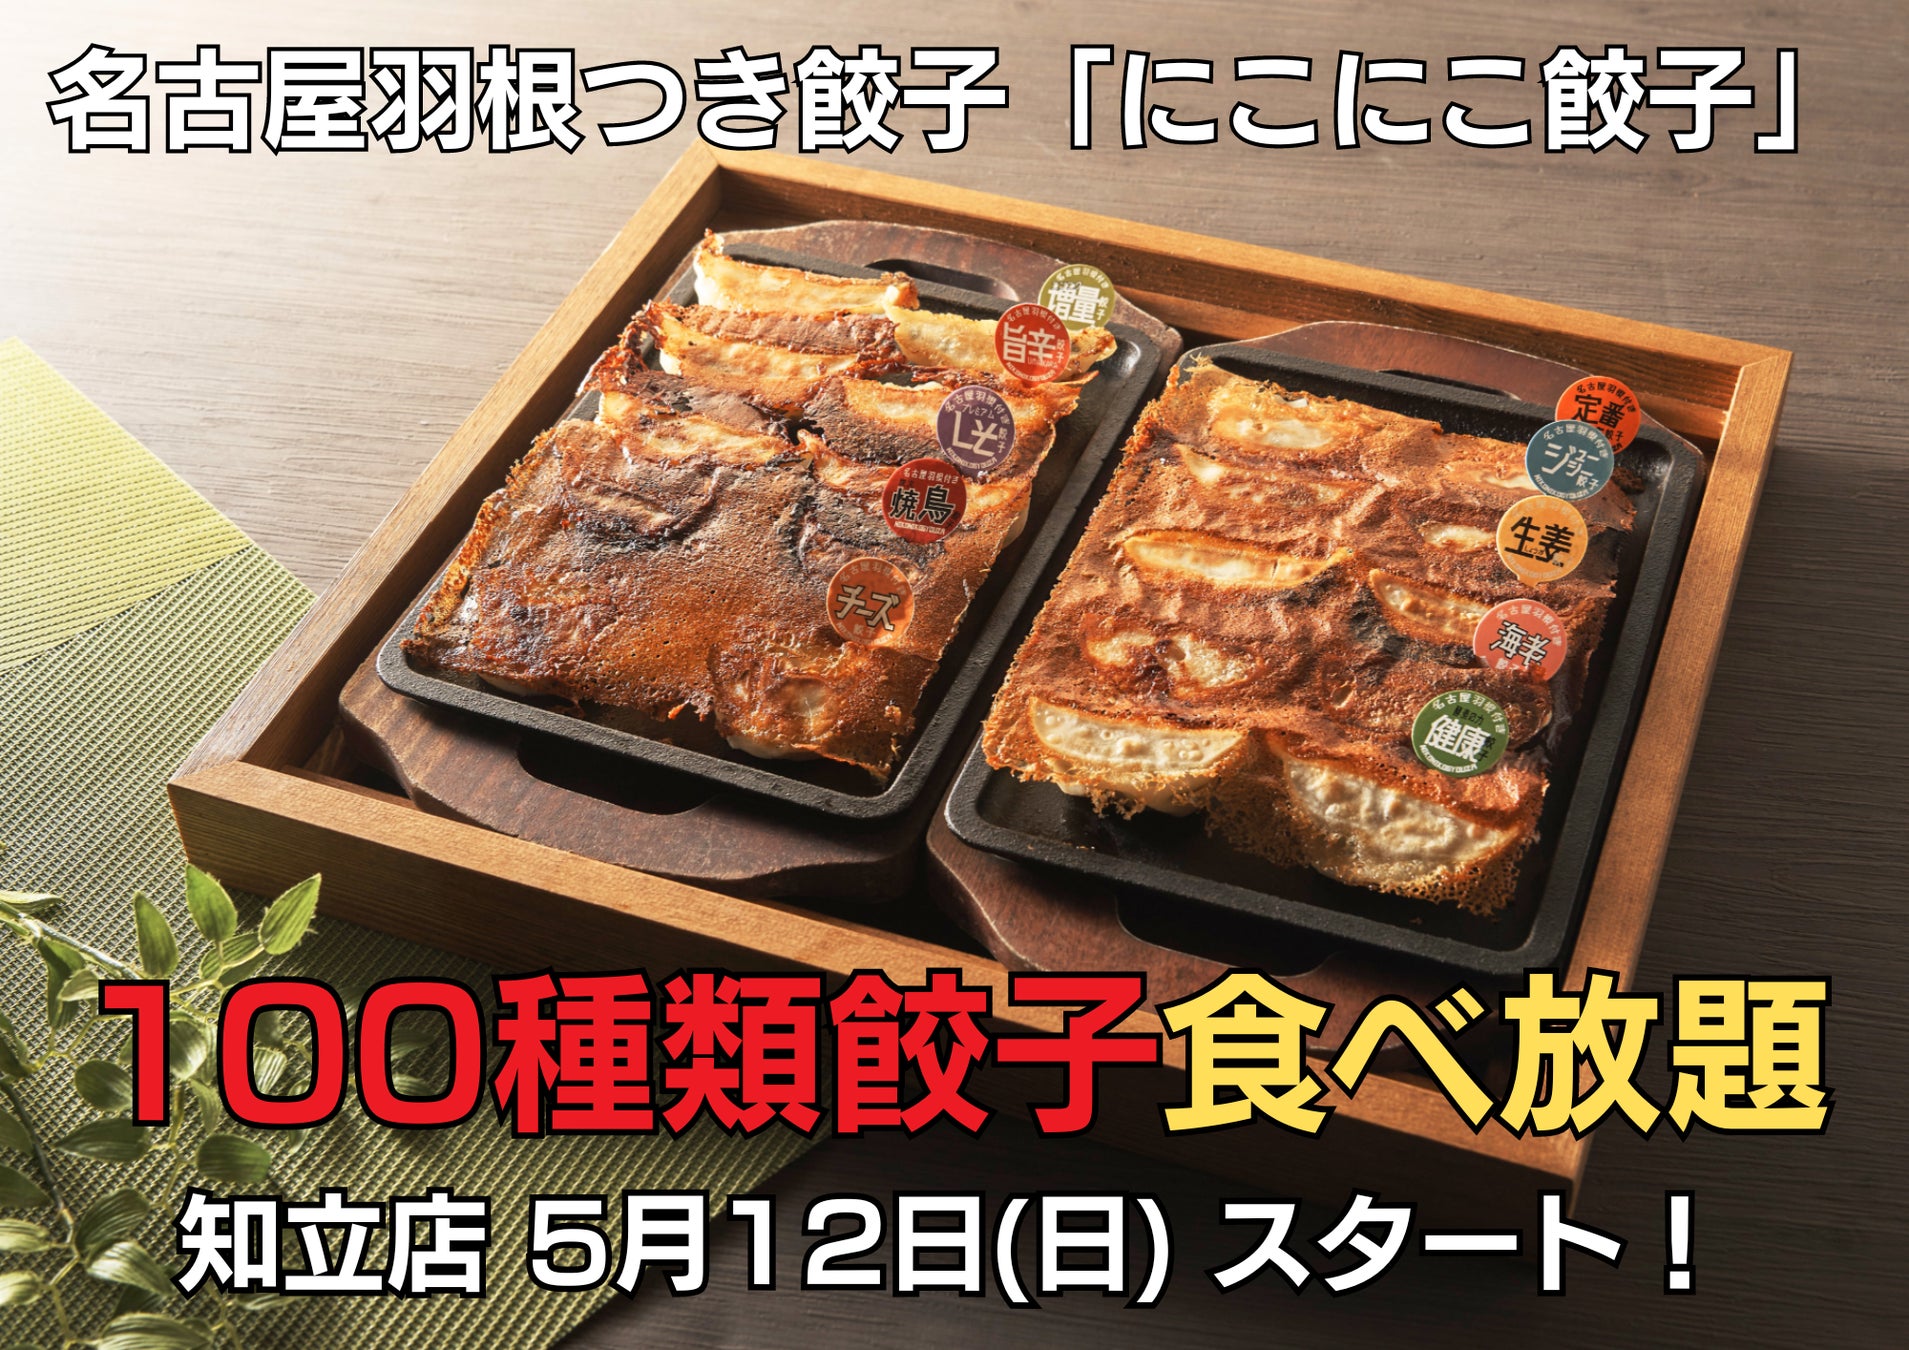 100種類餃子食べ放題が「にこにこ餃子」知立店にて5月12日よりスタートします